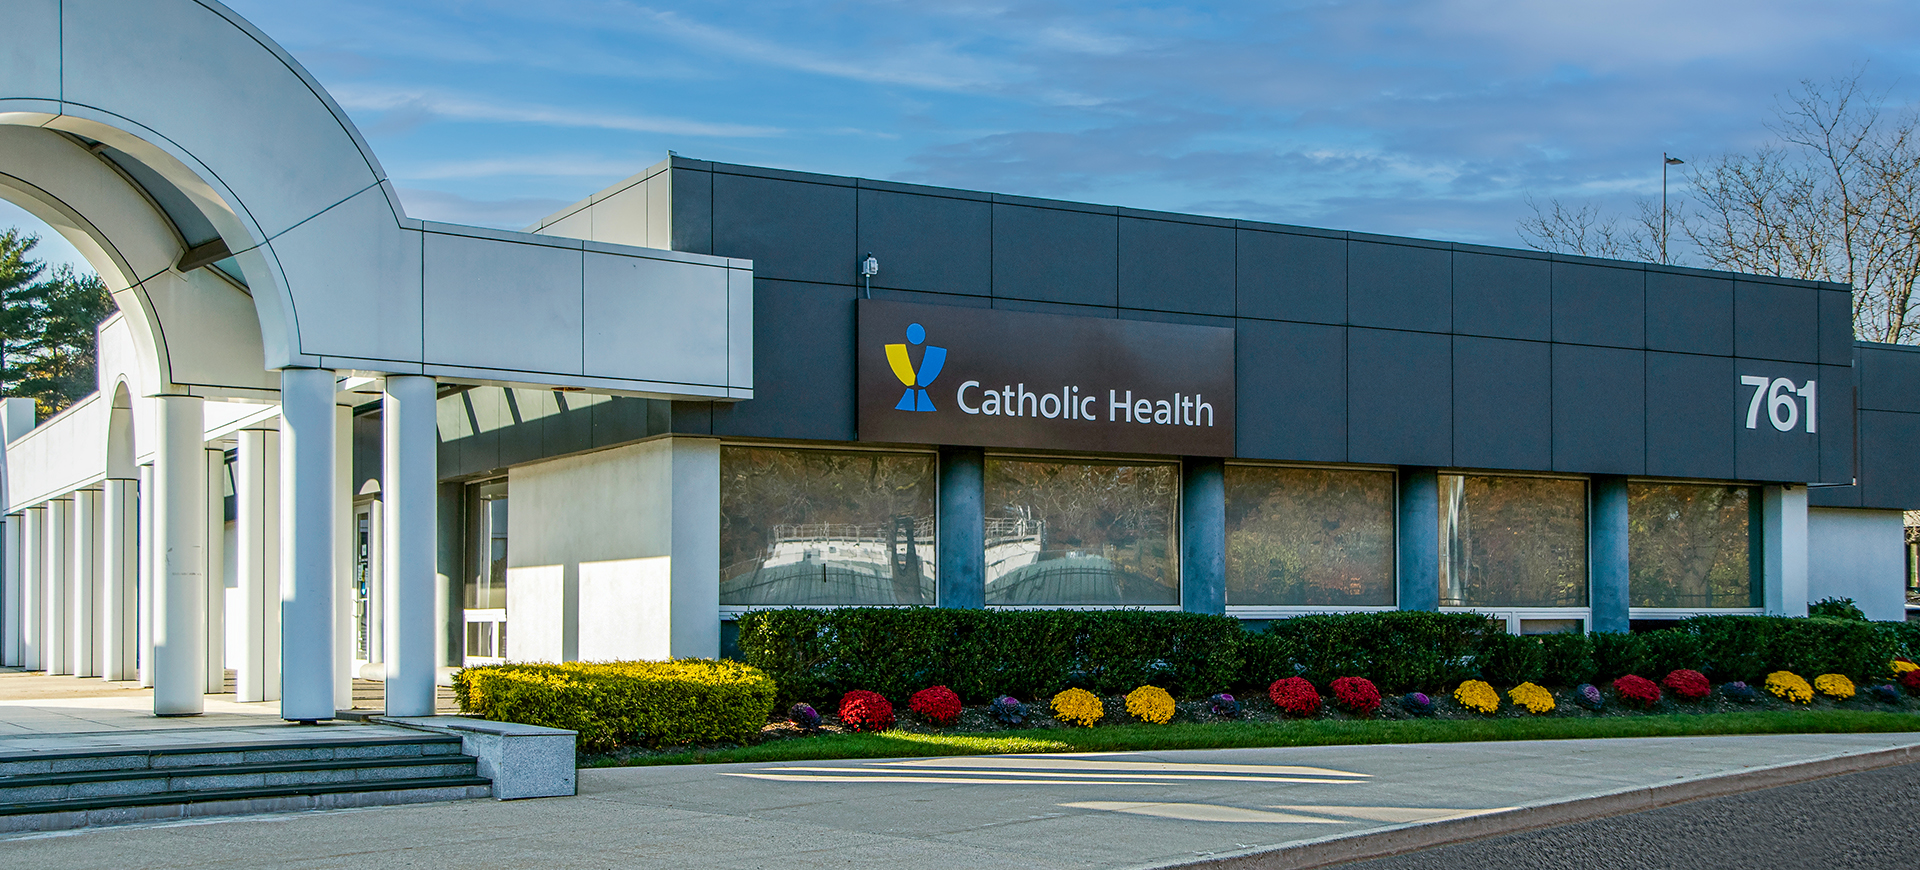       	        
	  	  Catholic Health Ambulatory Care at Westbury
	  	  
	        